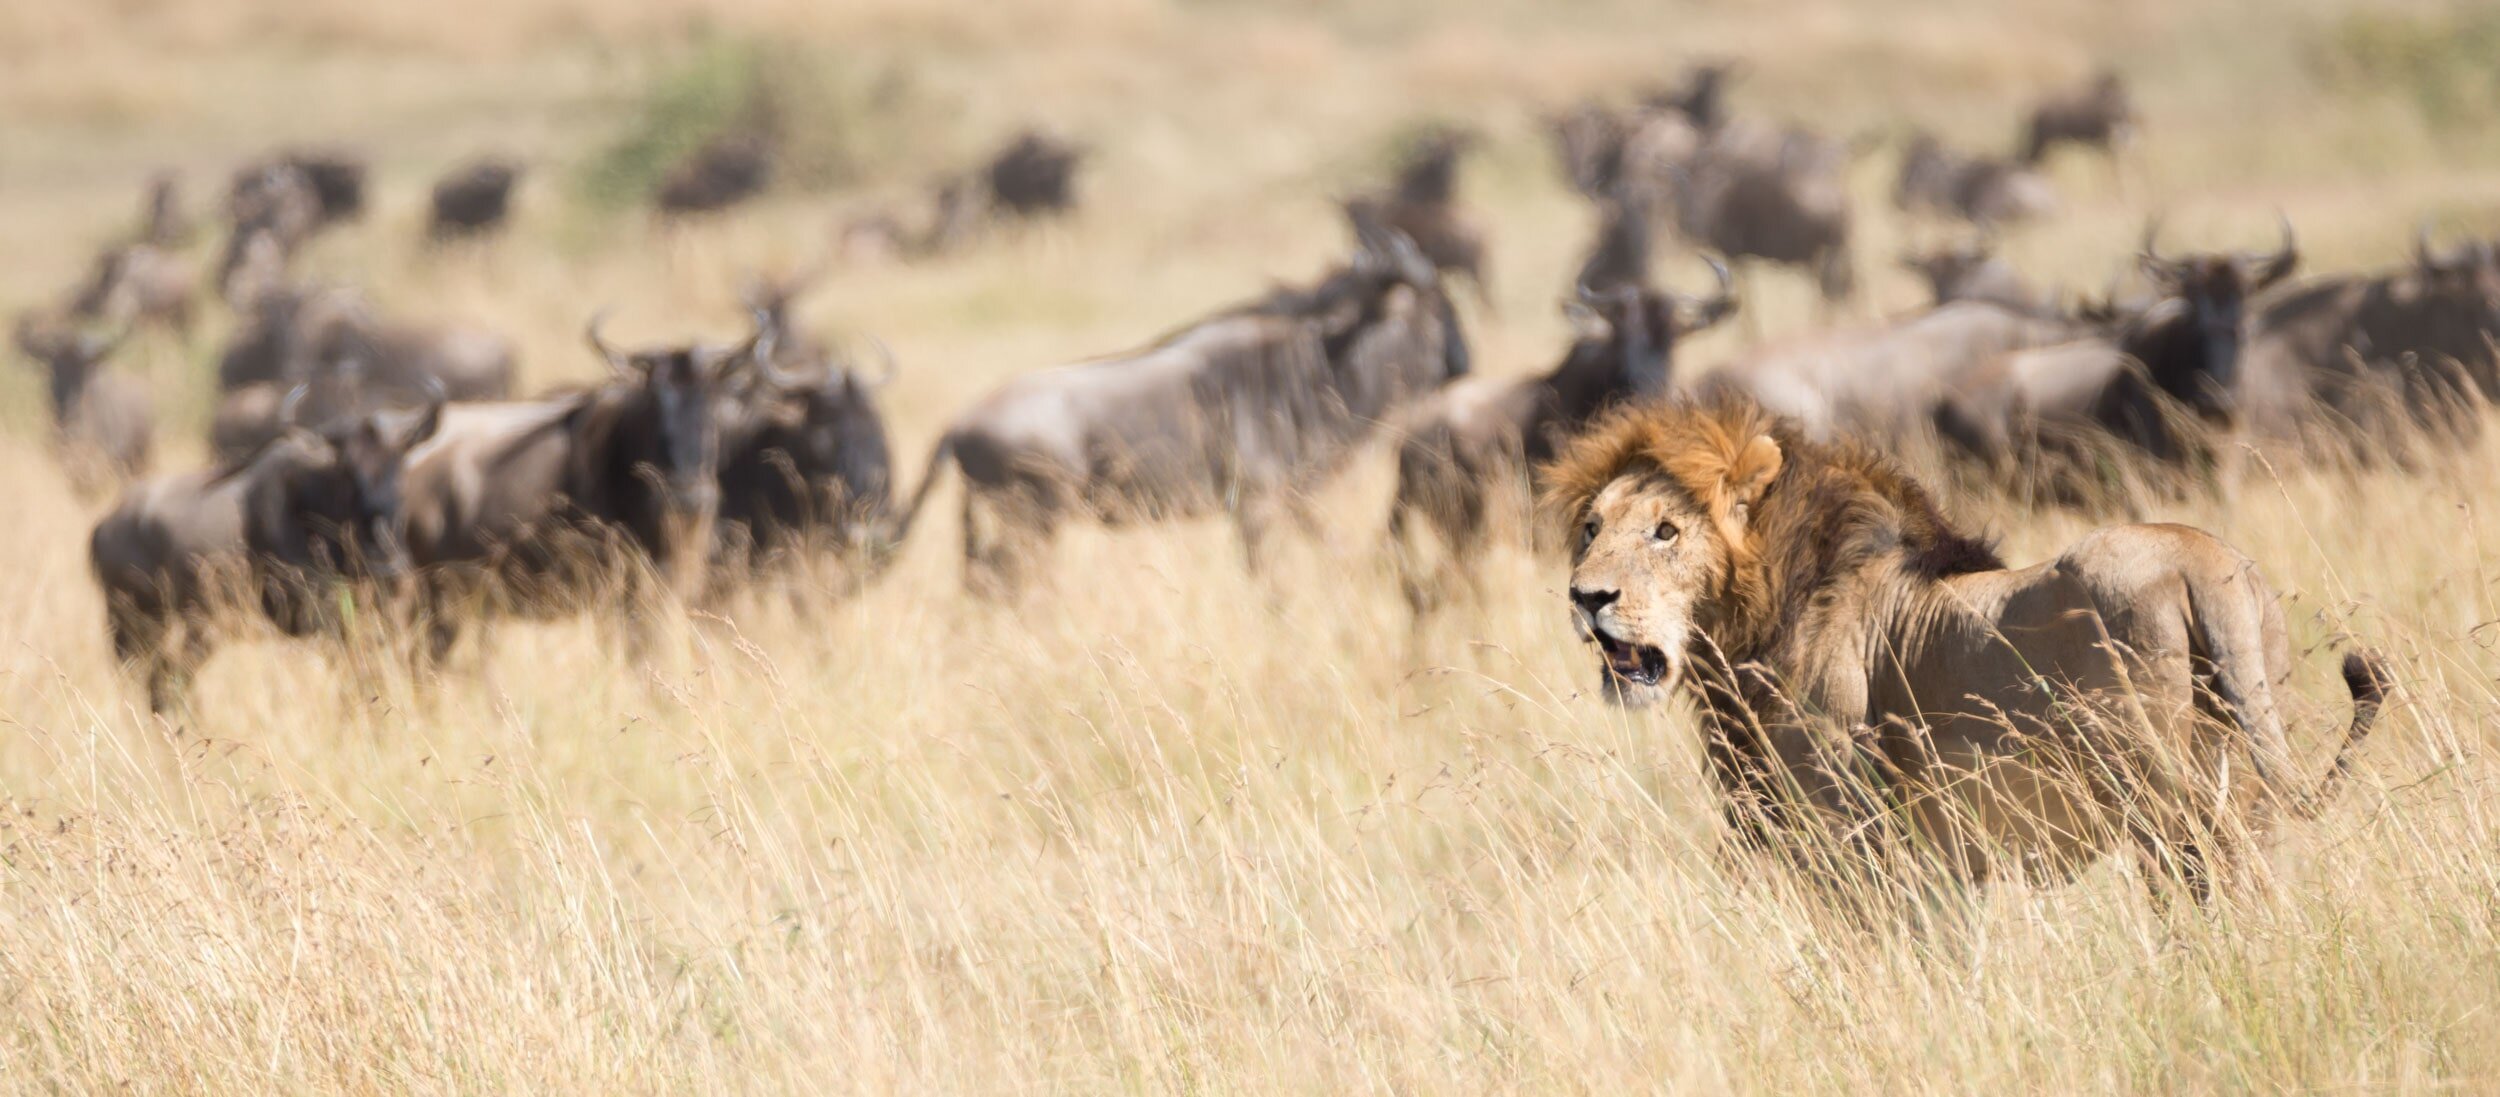 Lion watches as wildebeest pass behind him: 56 downloads